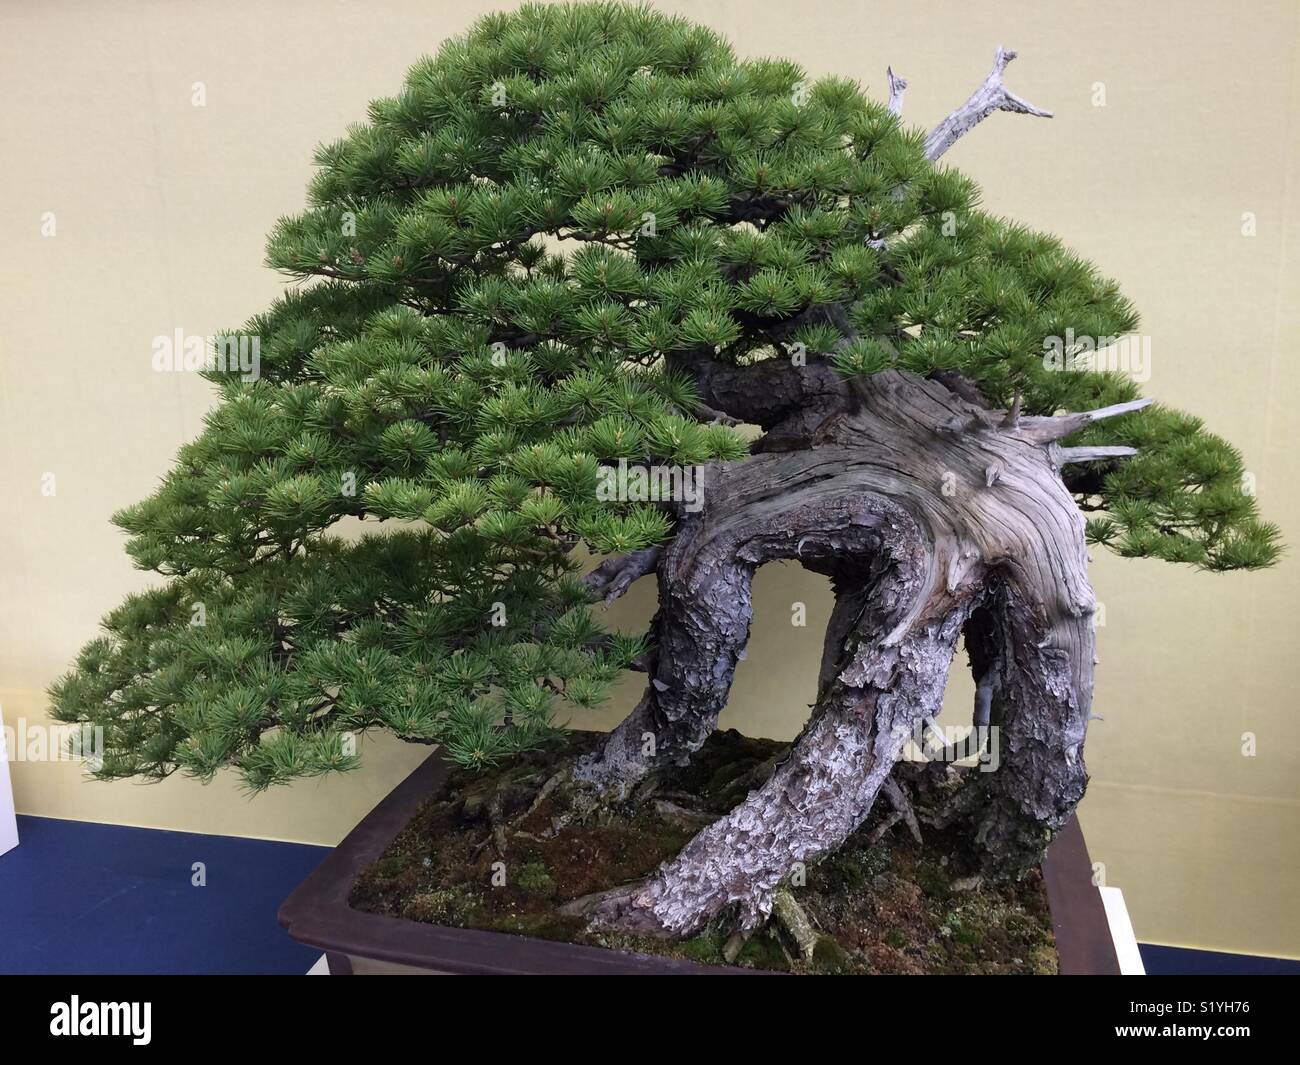 Bella la disposizione dello stelo rappresenta il bellissimo bonsai come tre rami di albero attorno a piedi che sono davvero incredibile awesome meraviglioso, Saitama Tokyo Giappone Foto Stock